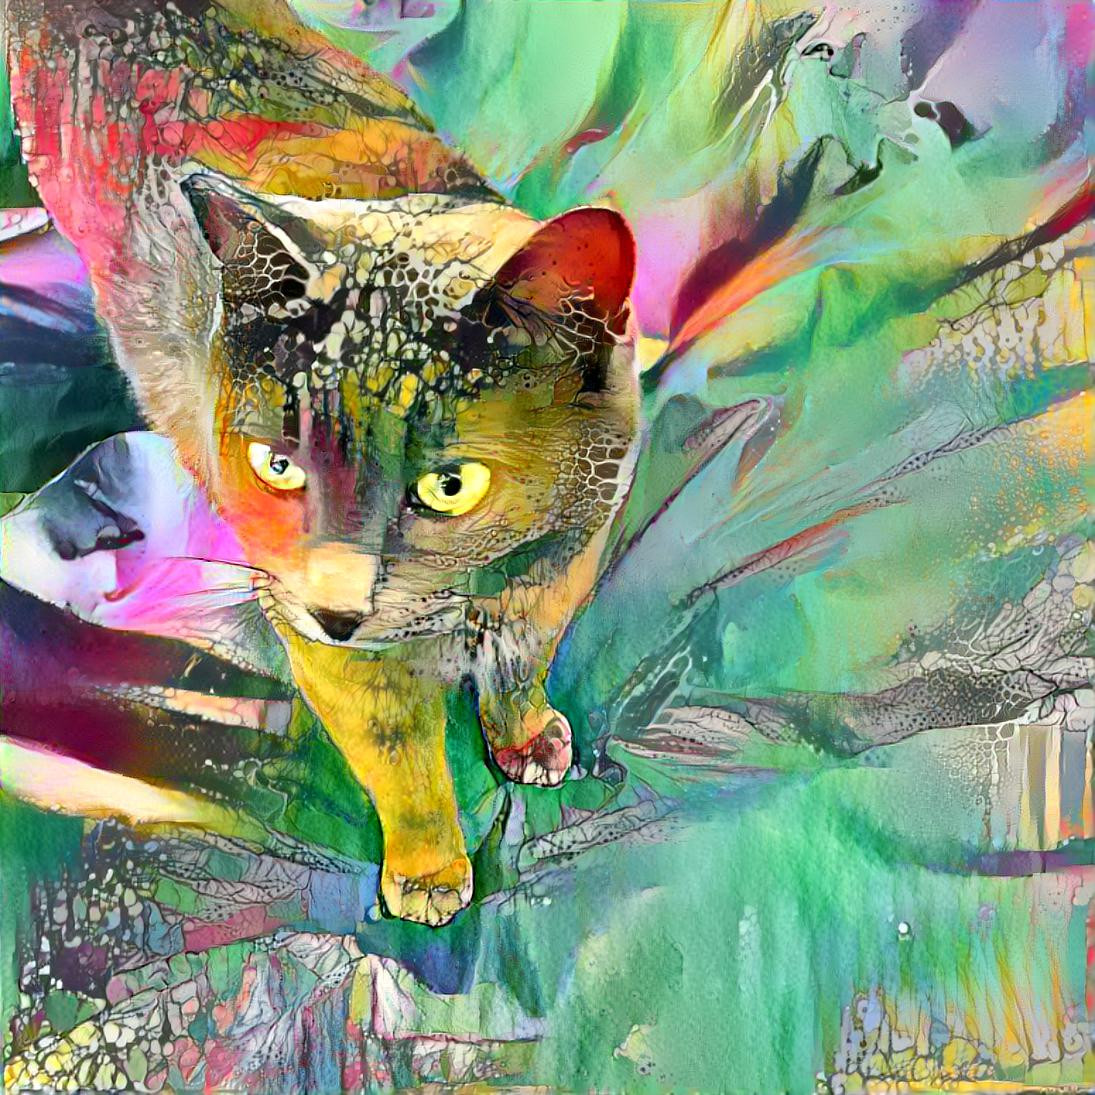 Ella the Cat in Color [1.2MP]